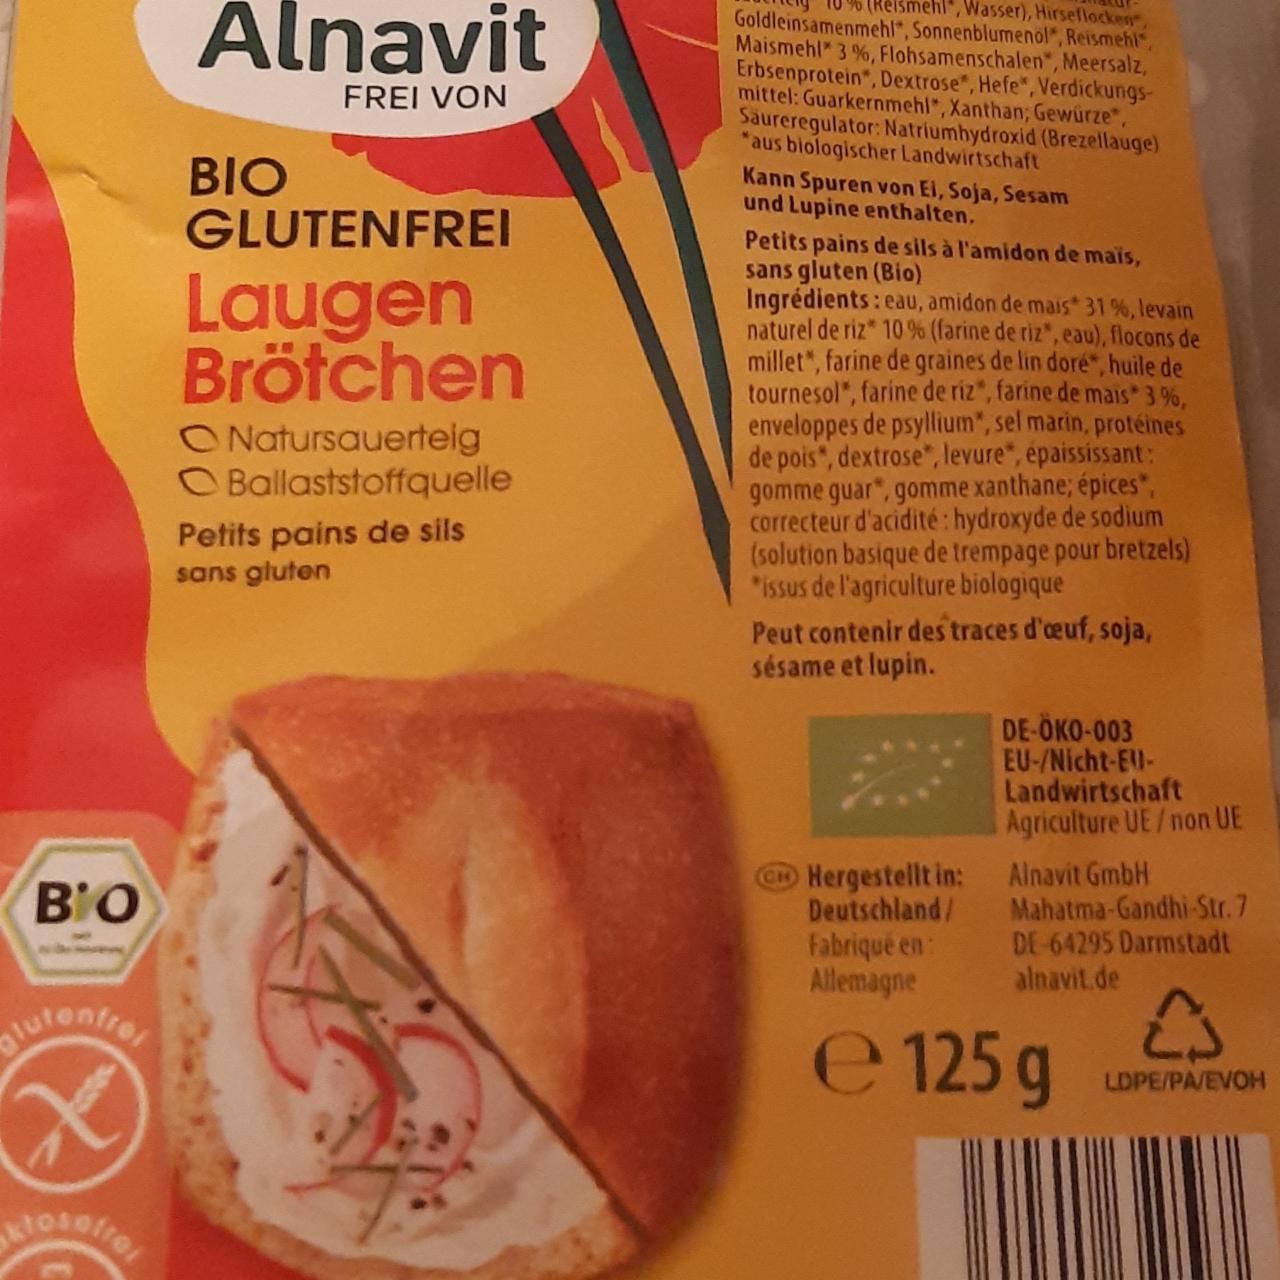 Fotografie - bio glutenfrei Laugen Brötchen Alnavit